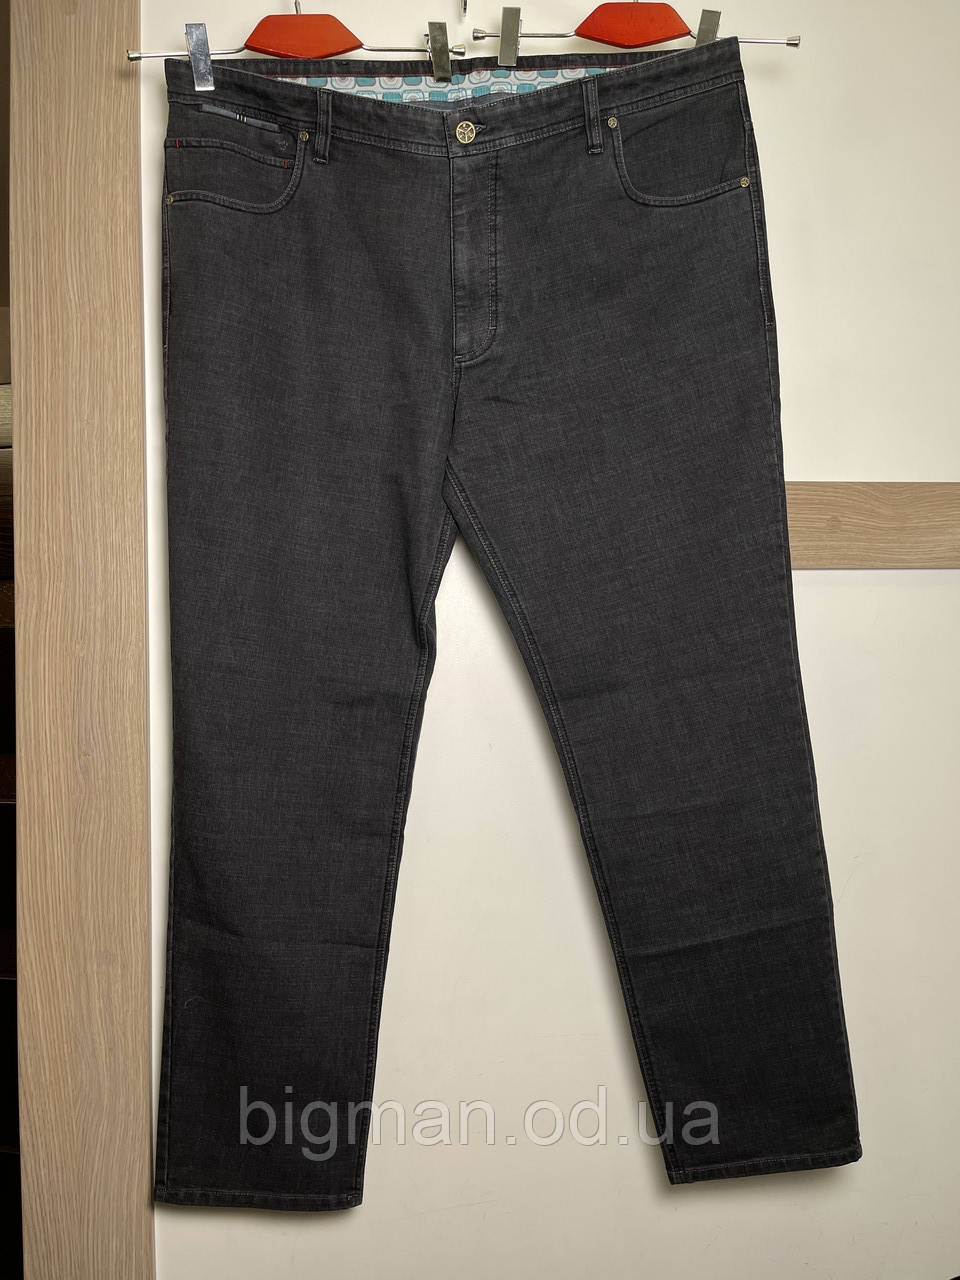 Темно-сірі чоловічі джинси на ремені IFC 58-70 розміру великого батального розміру Туреччина